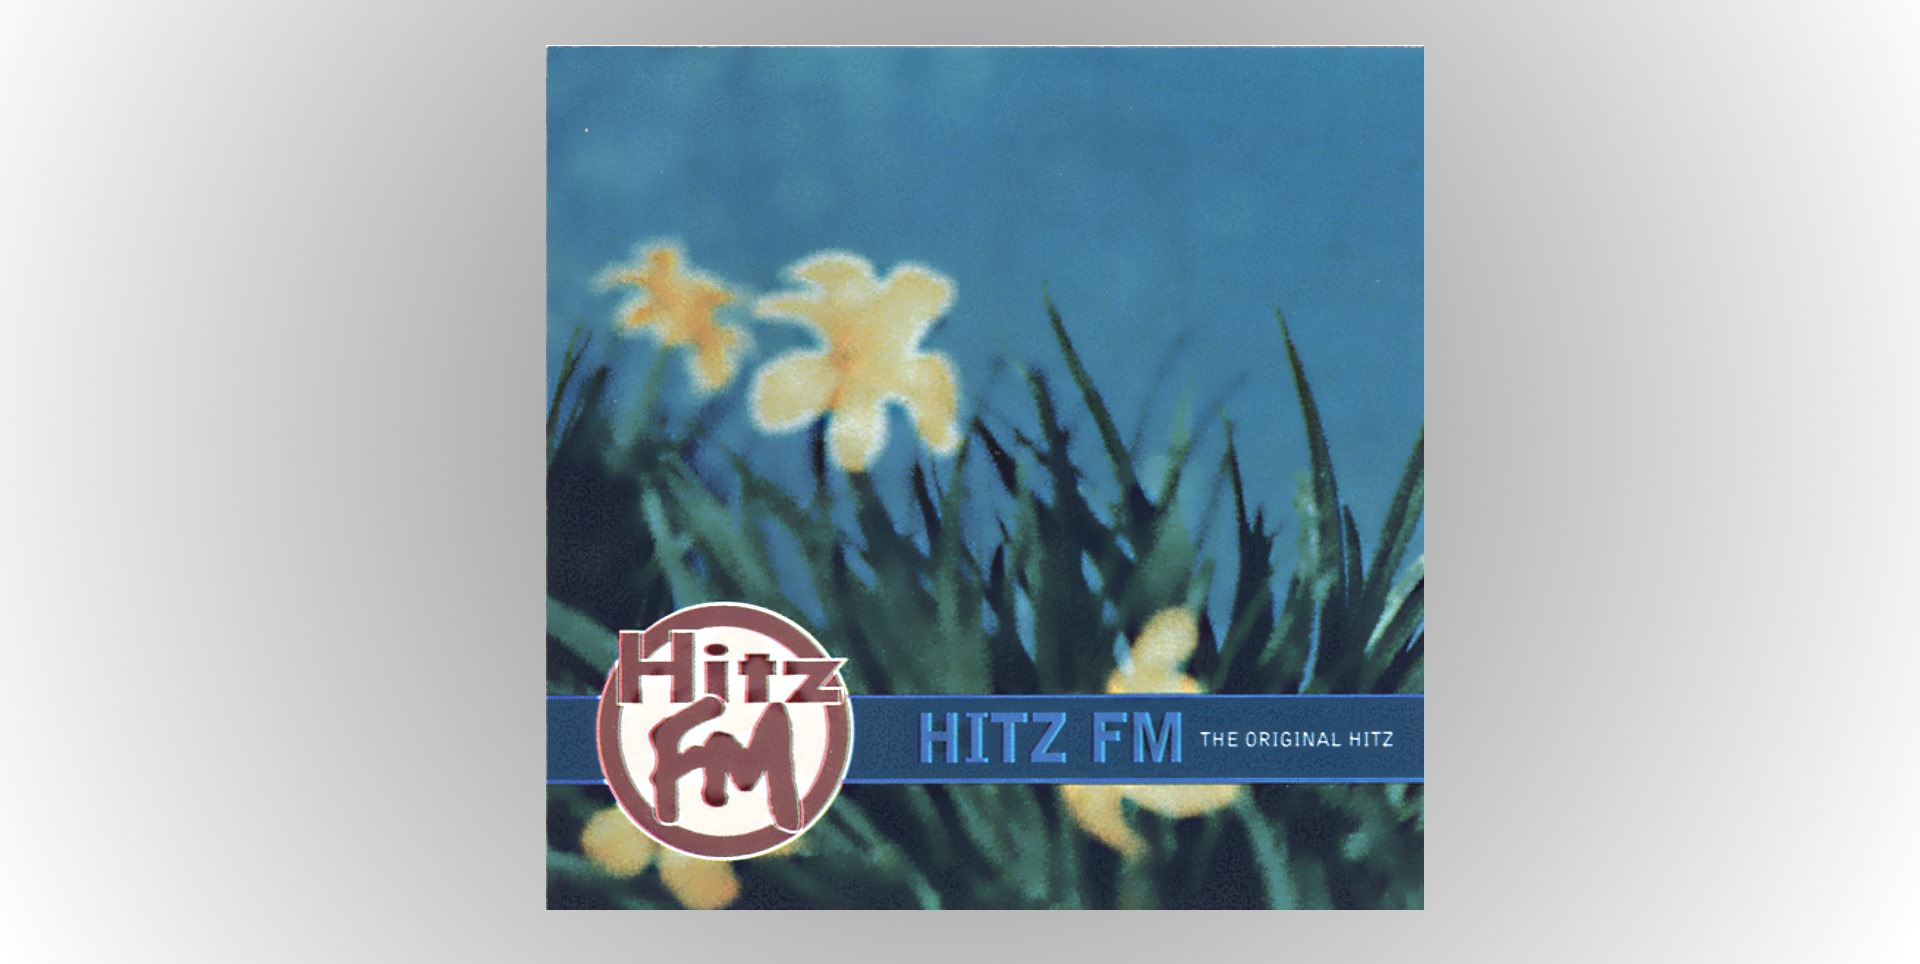 The 1st Hitz FM CD "The Original Hitz" released December 1994